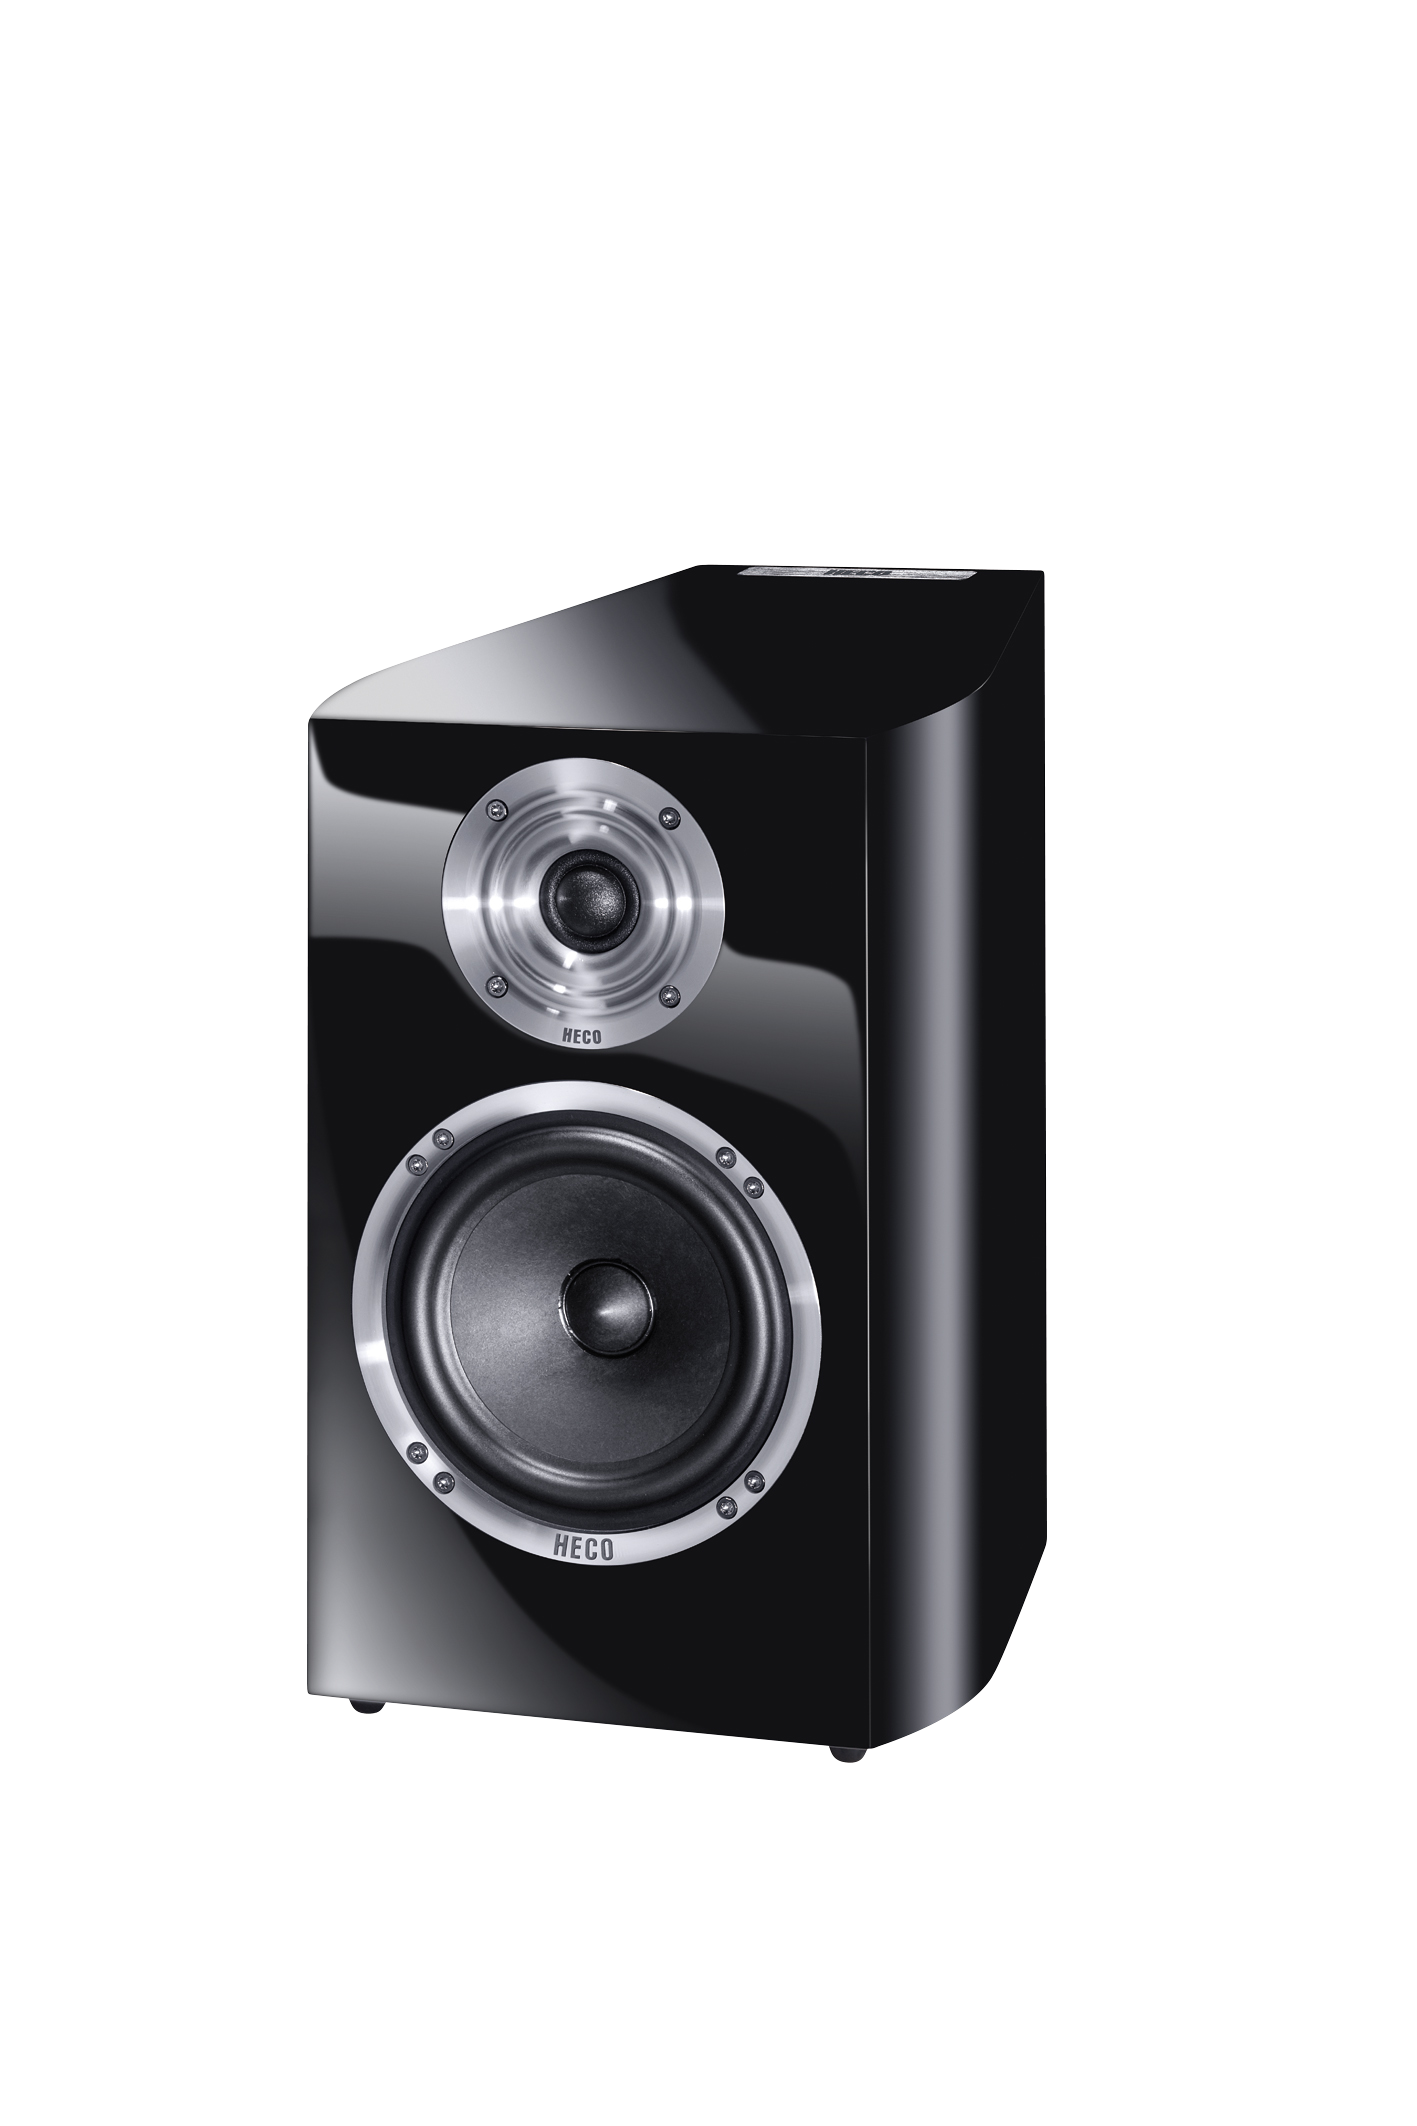 HECO Celan Revolution 3, Regallautsprecher, Audiophile Kompaktbox mit herausragenden Klangeigenschaften